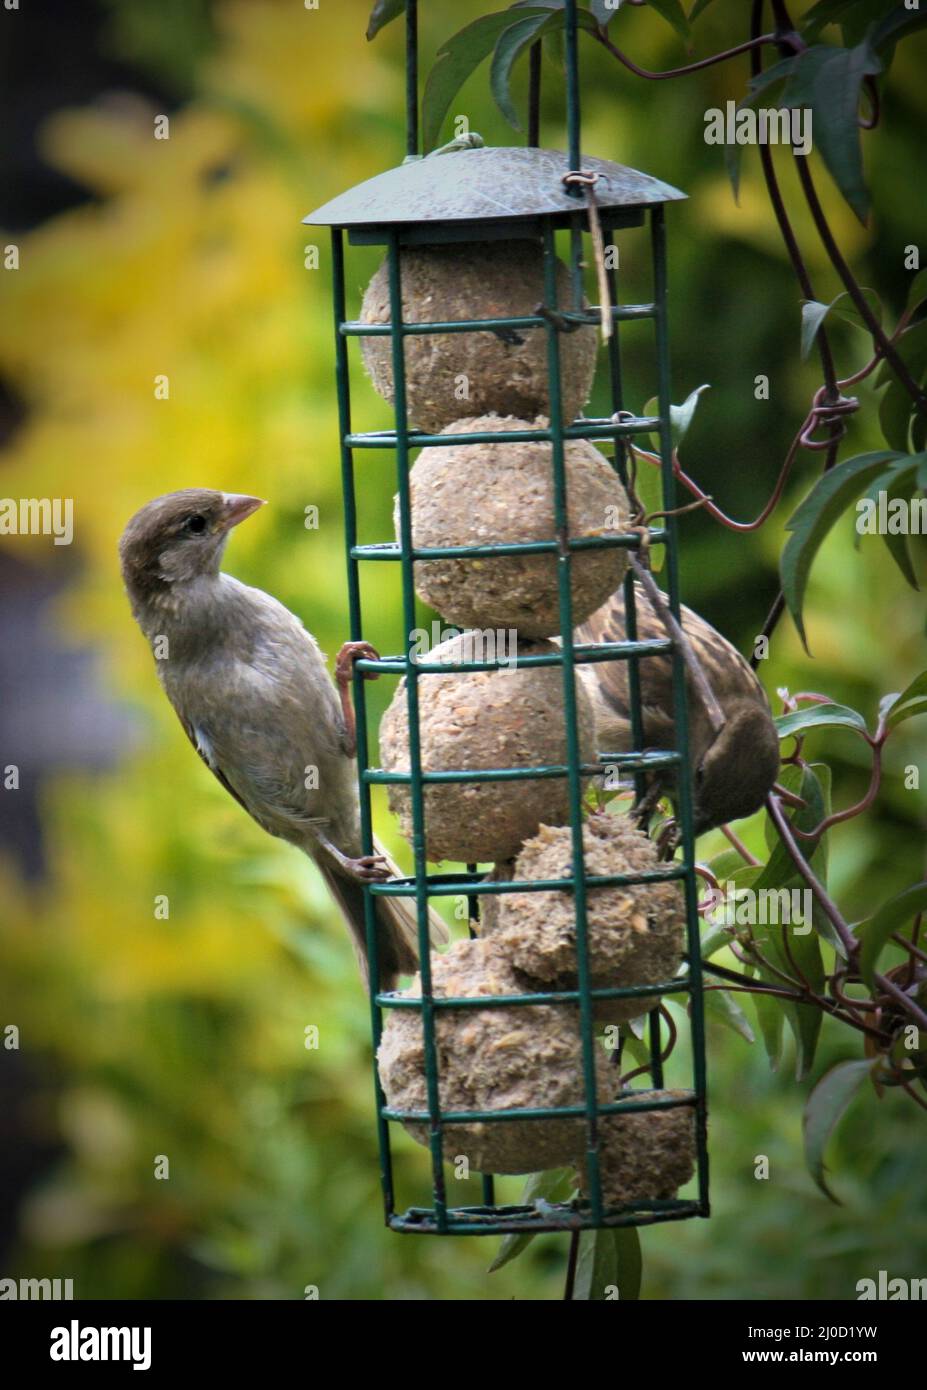 Sparrows feeding on a garden bird feeder, during the summer Stock Photo